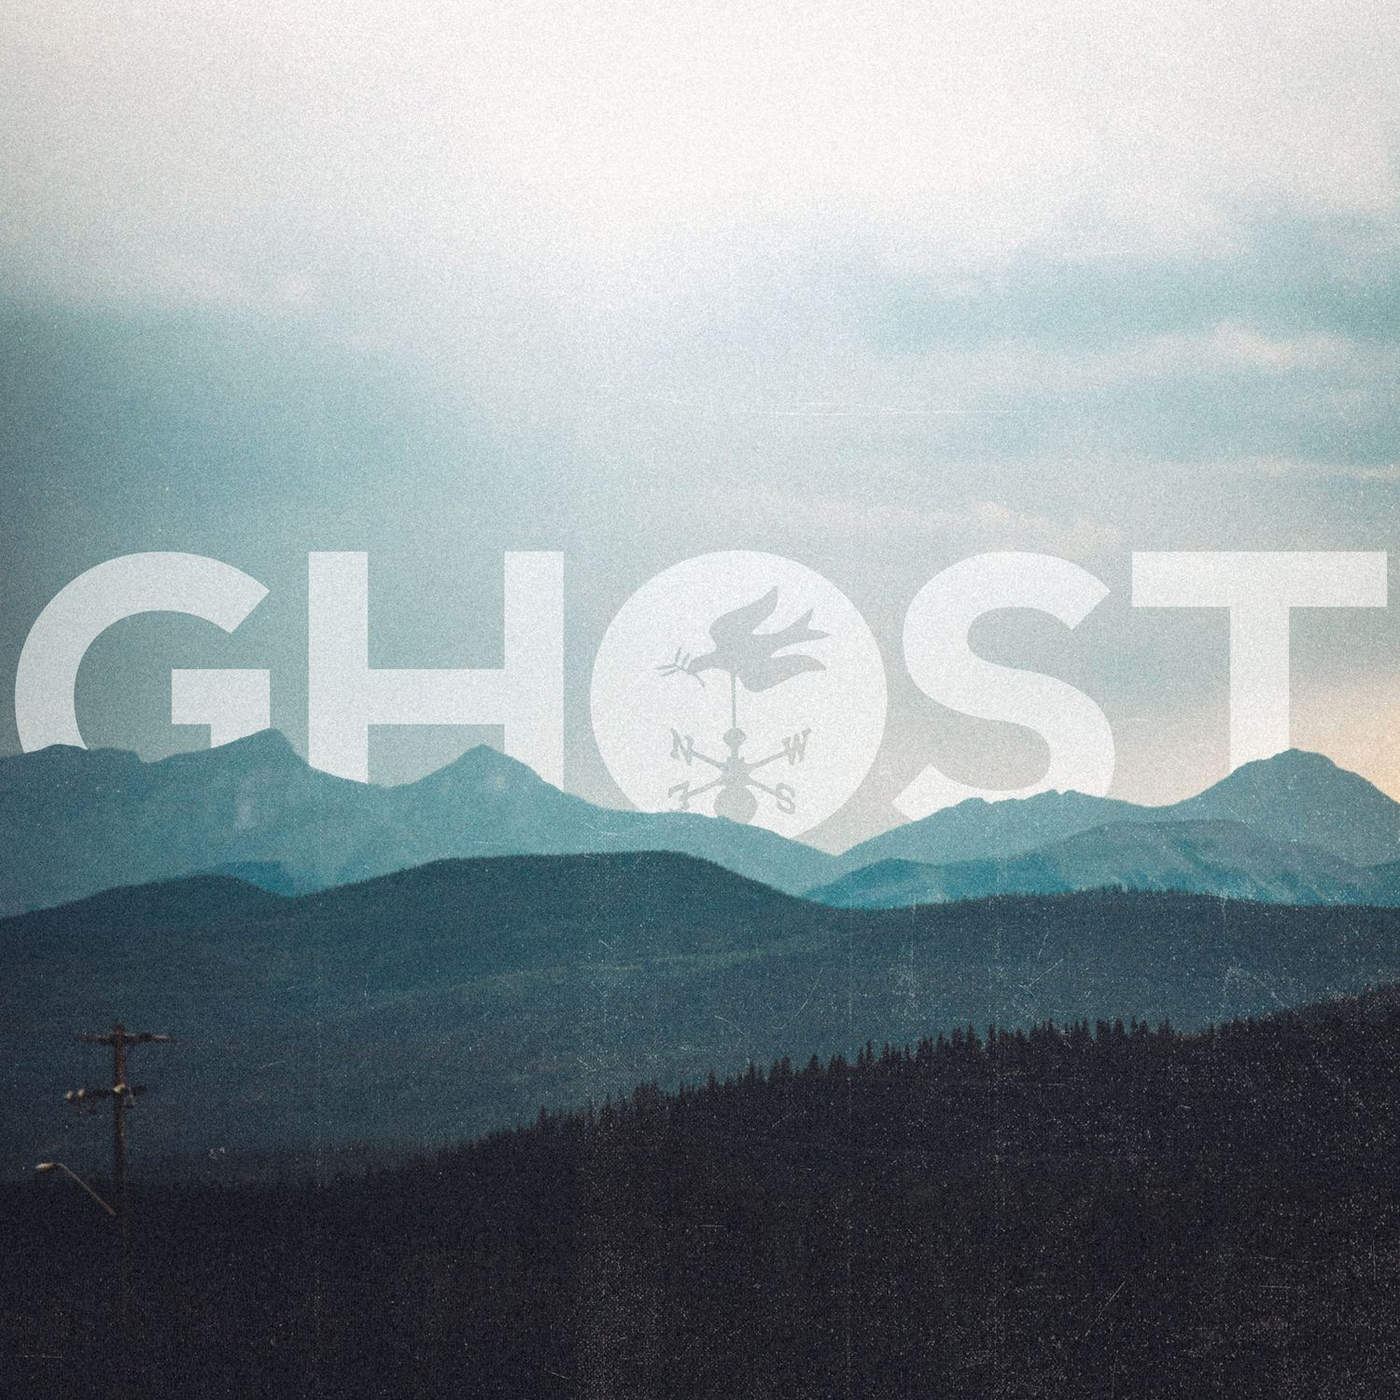 Silverstein - Ghost (Single) (2016) Album Info